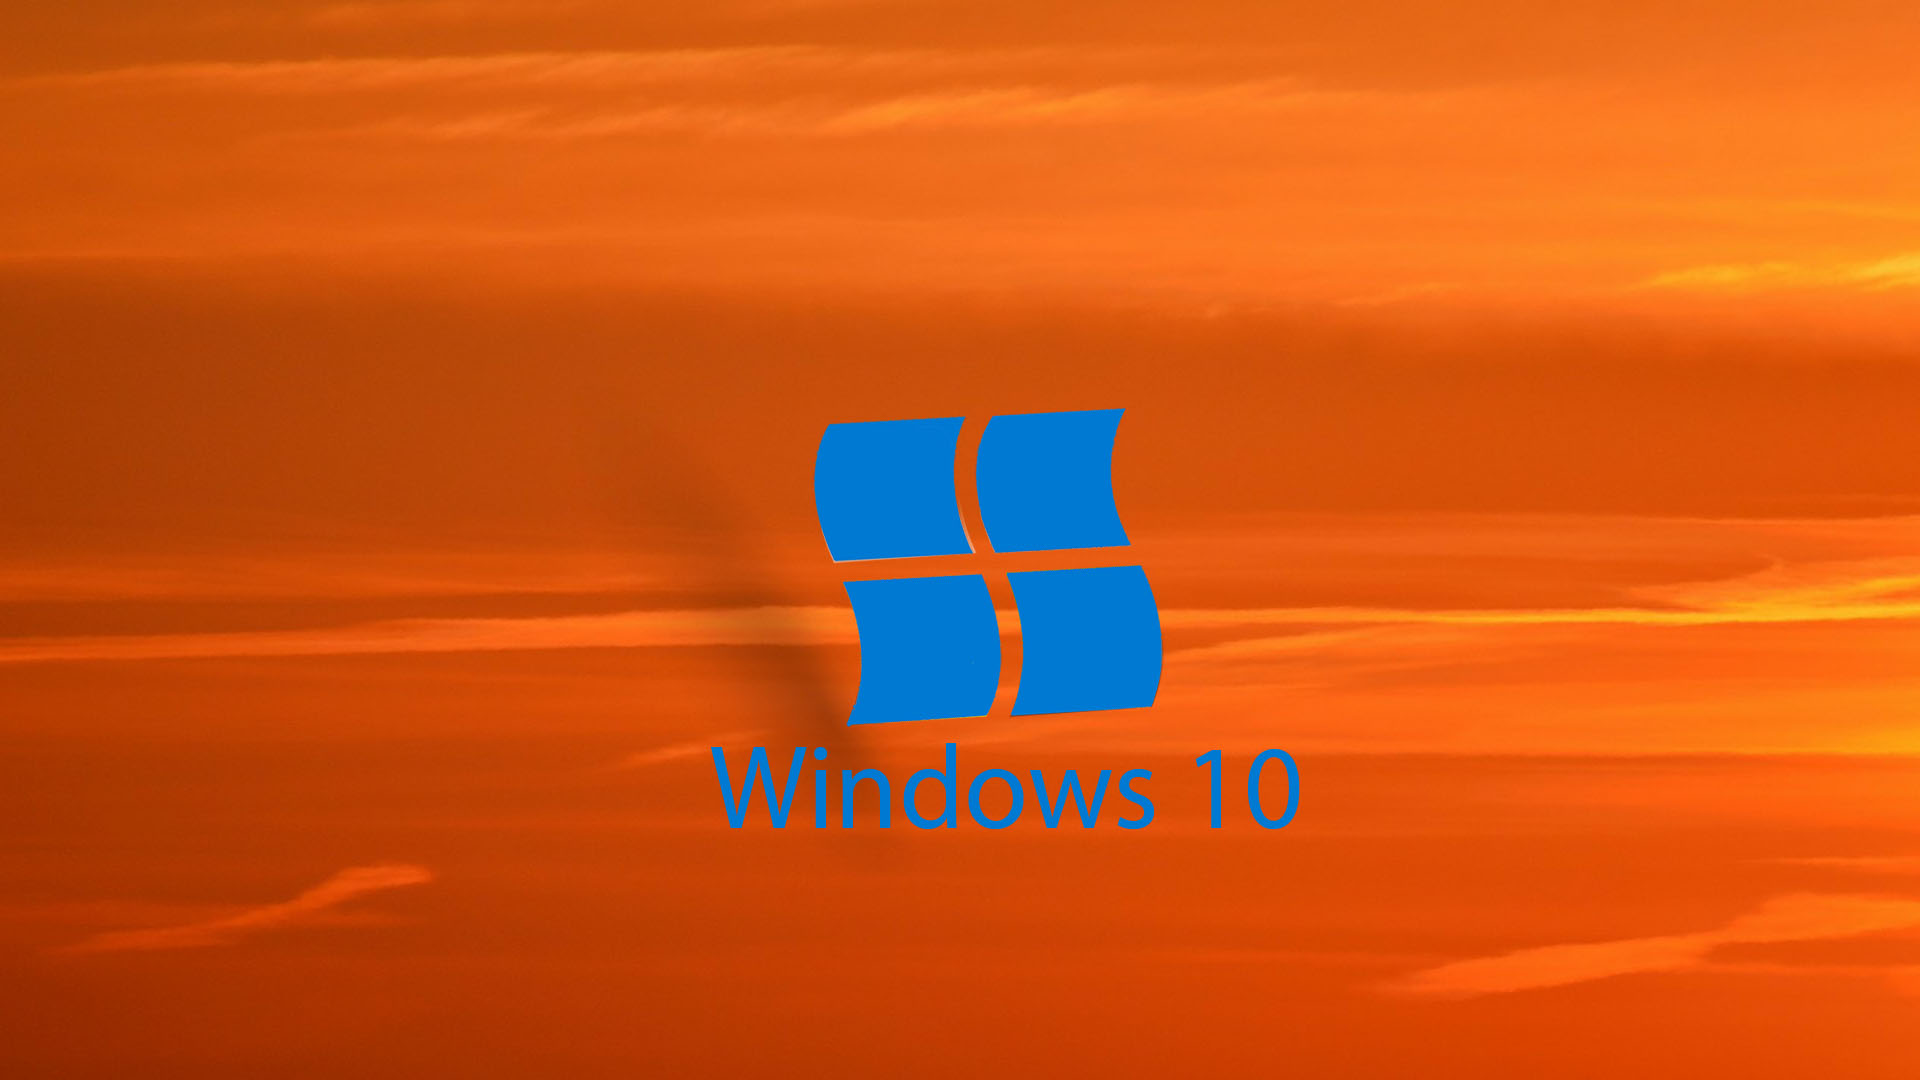 sfondo del desktop hd per windows 10,arancia,blu,giallo,bandiera,ambra